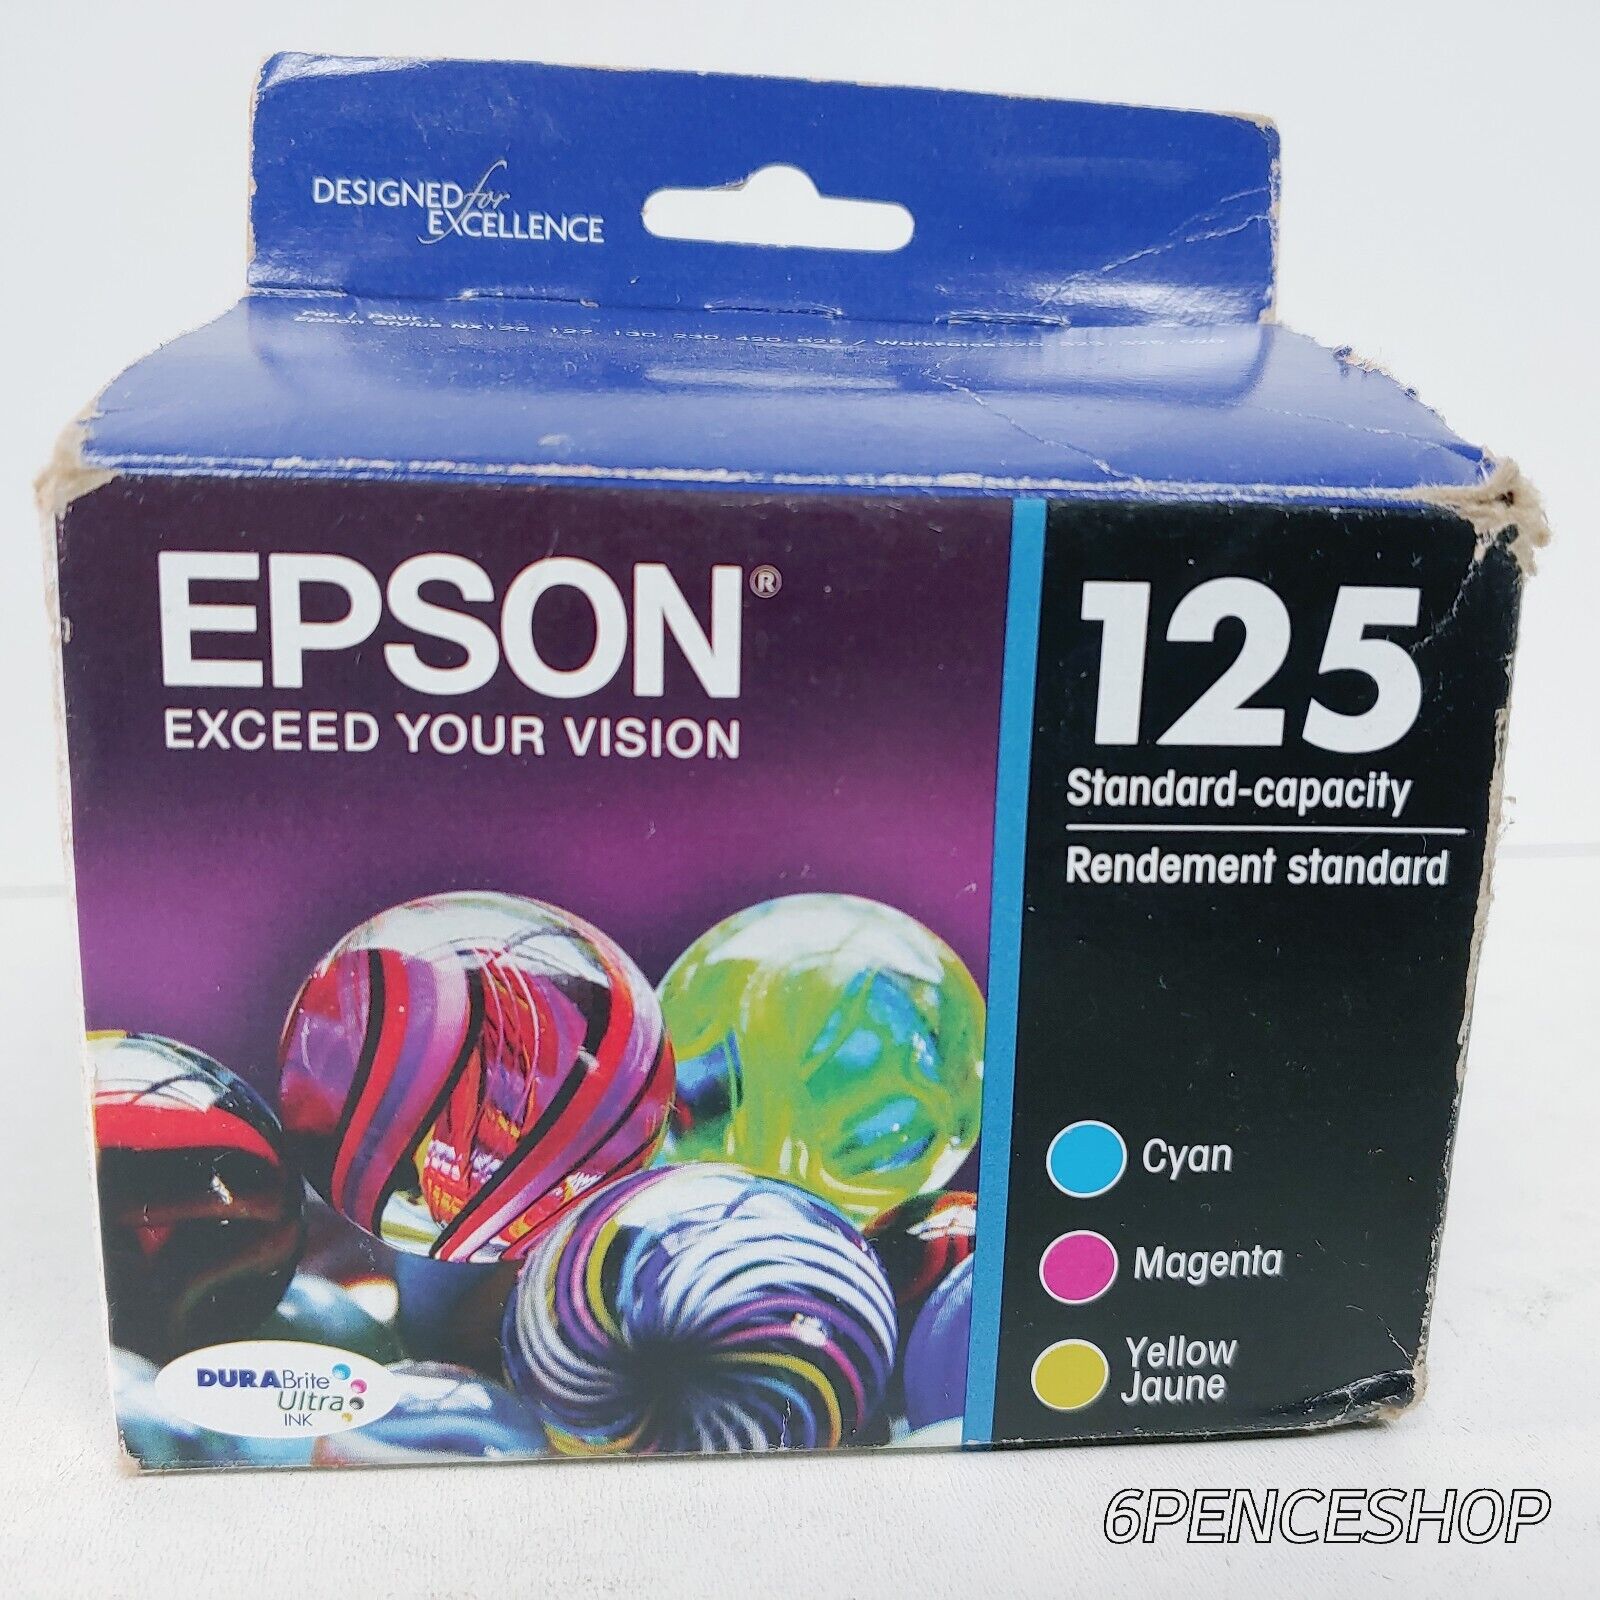 *Exp. 2022 Imperfect Box* Epson 125 Tri-Color C/M/Y Ink Cartridges T125520